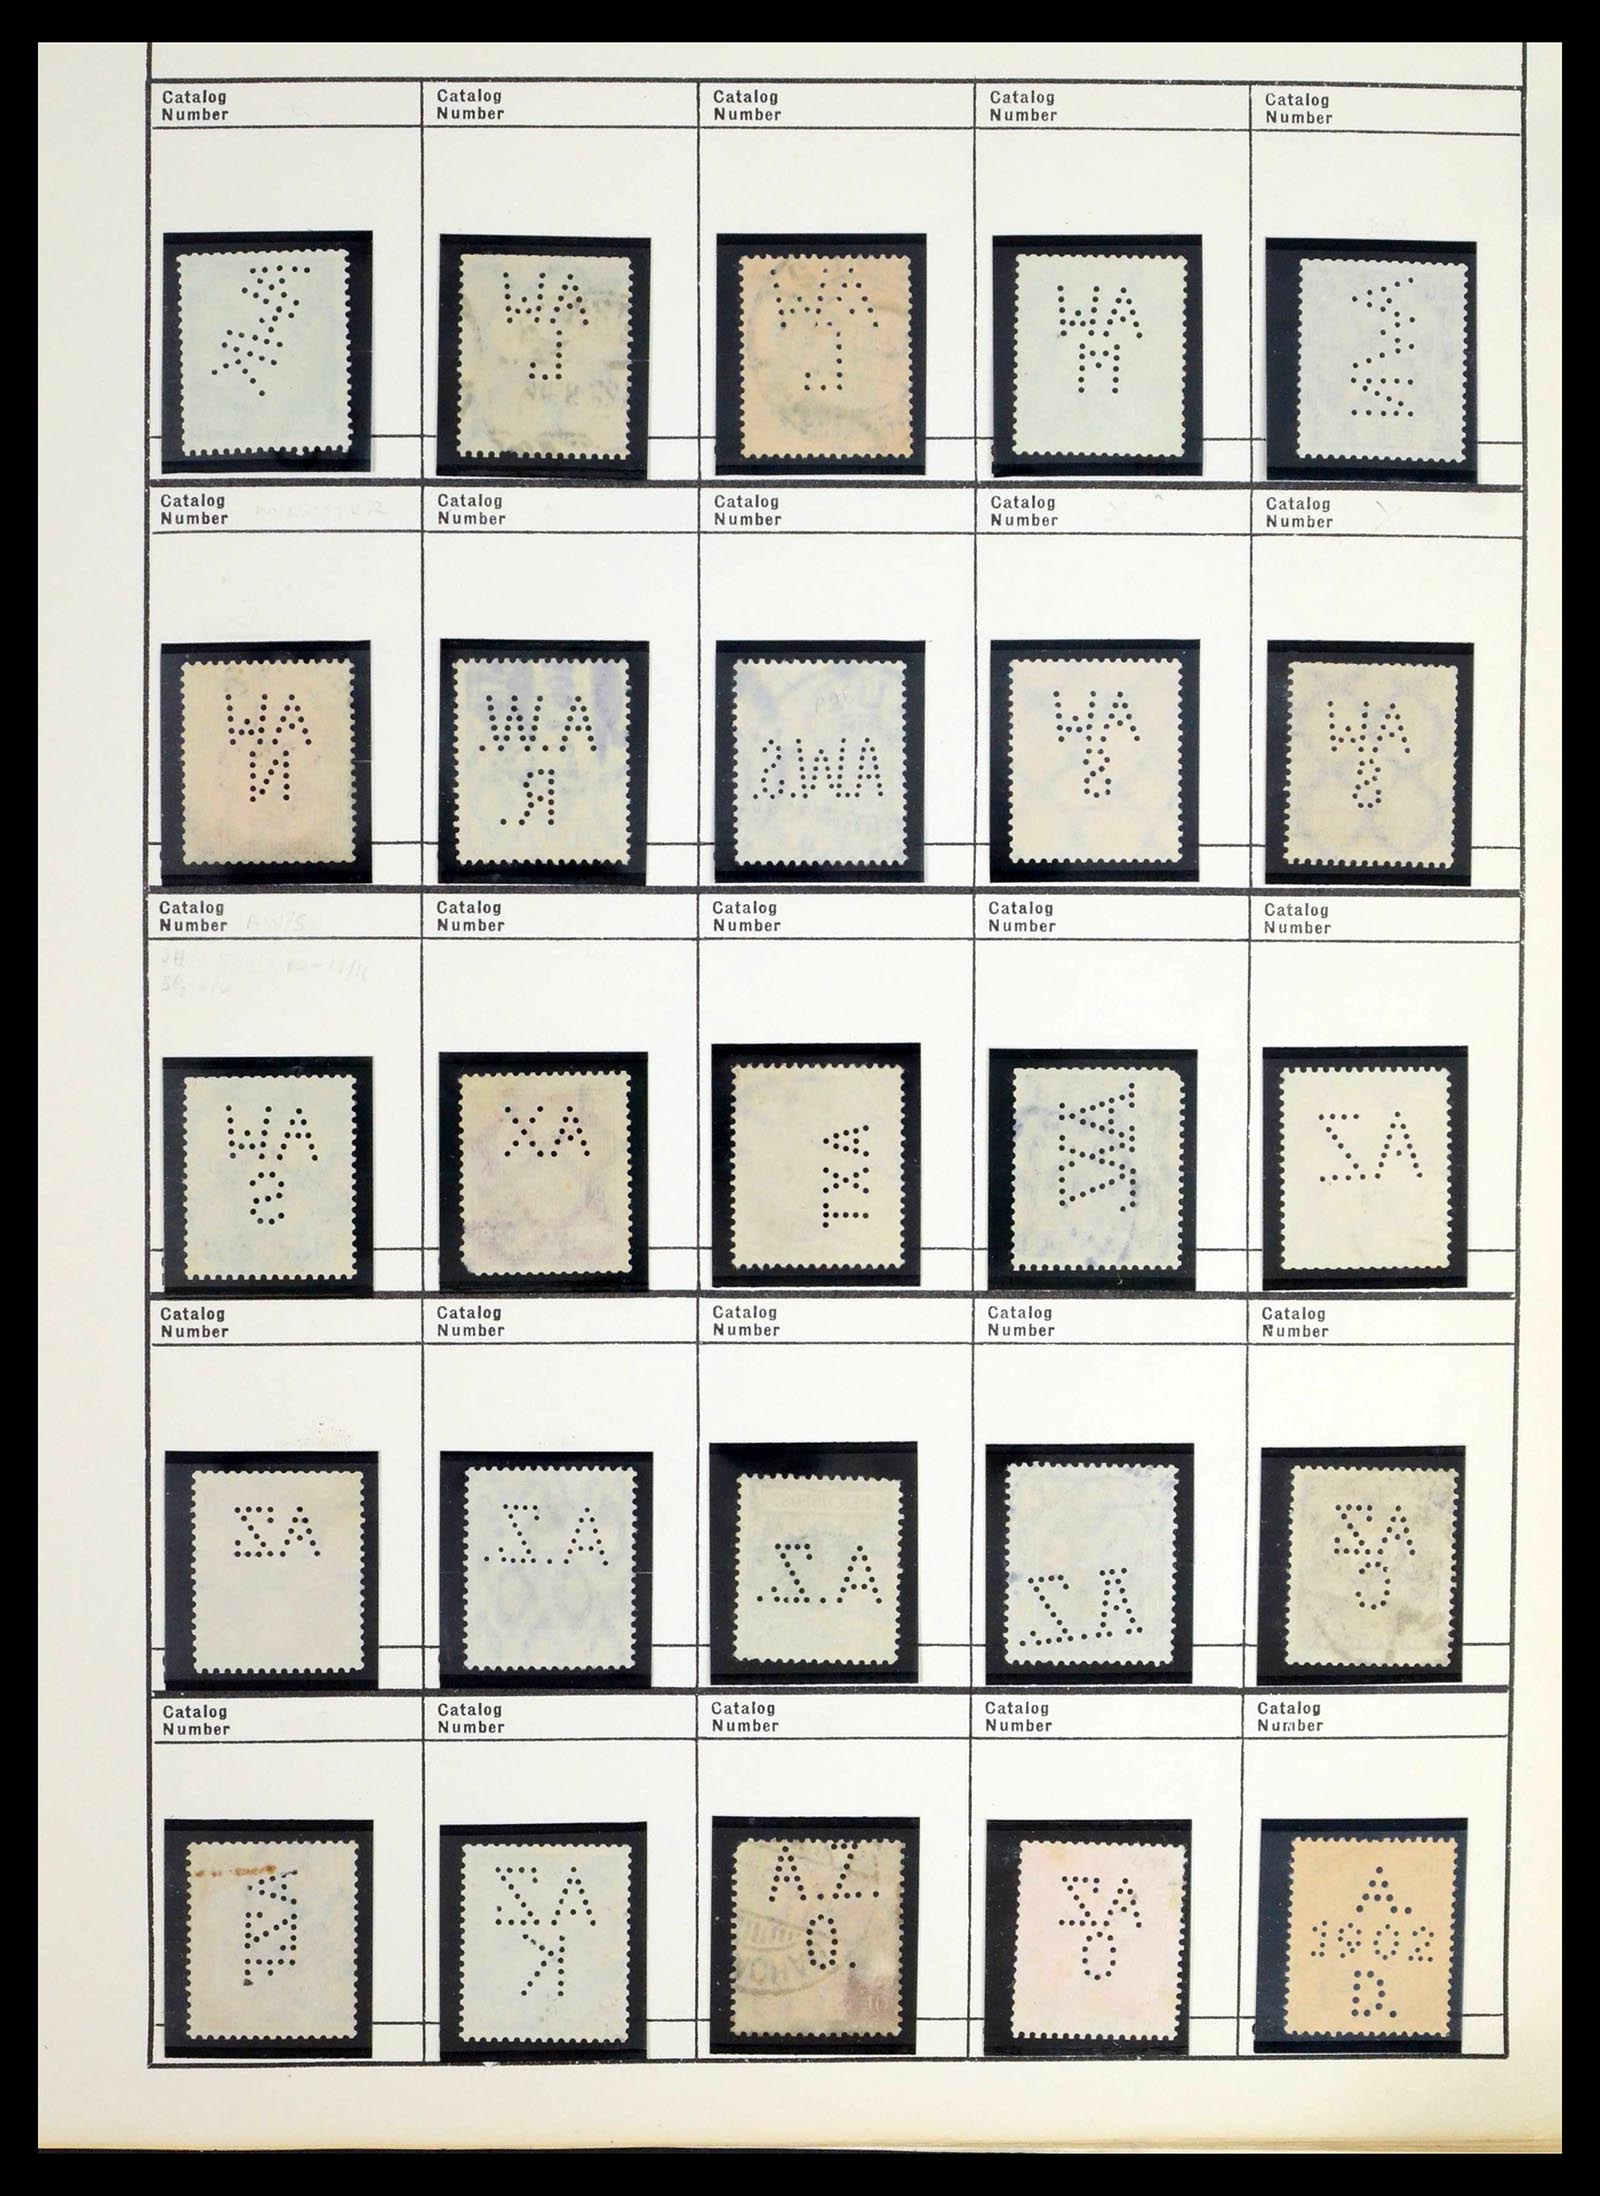 39480 0049 - Stamp collection 39480 German Reich perfins 1880-1955.